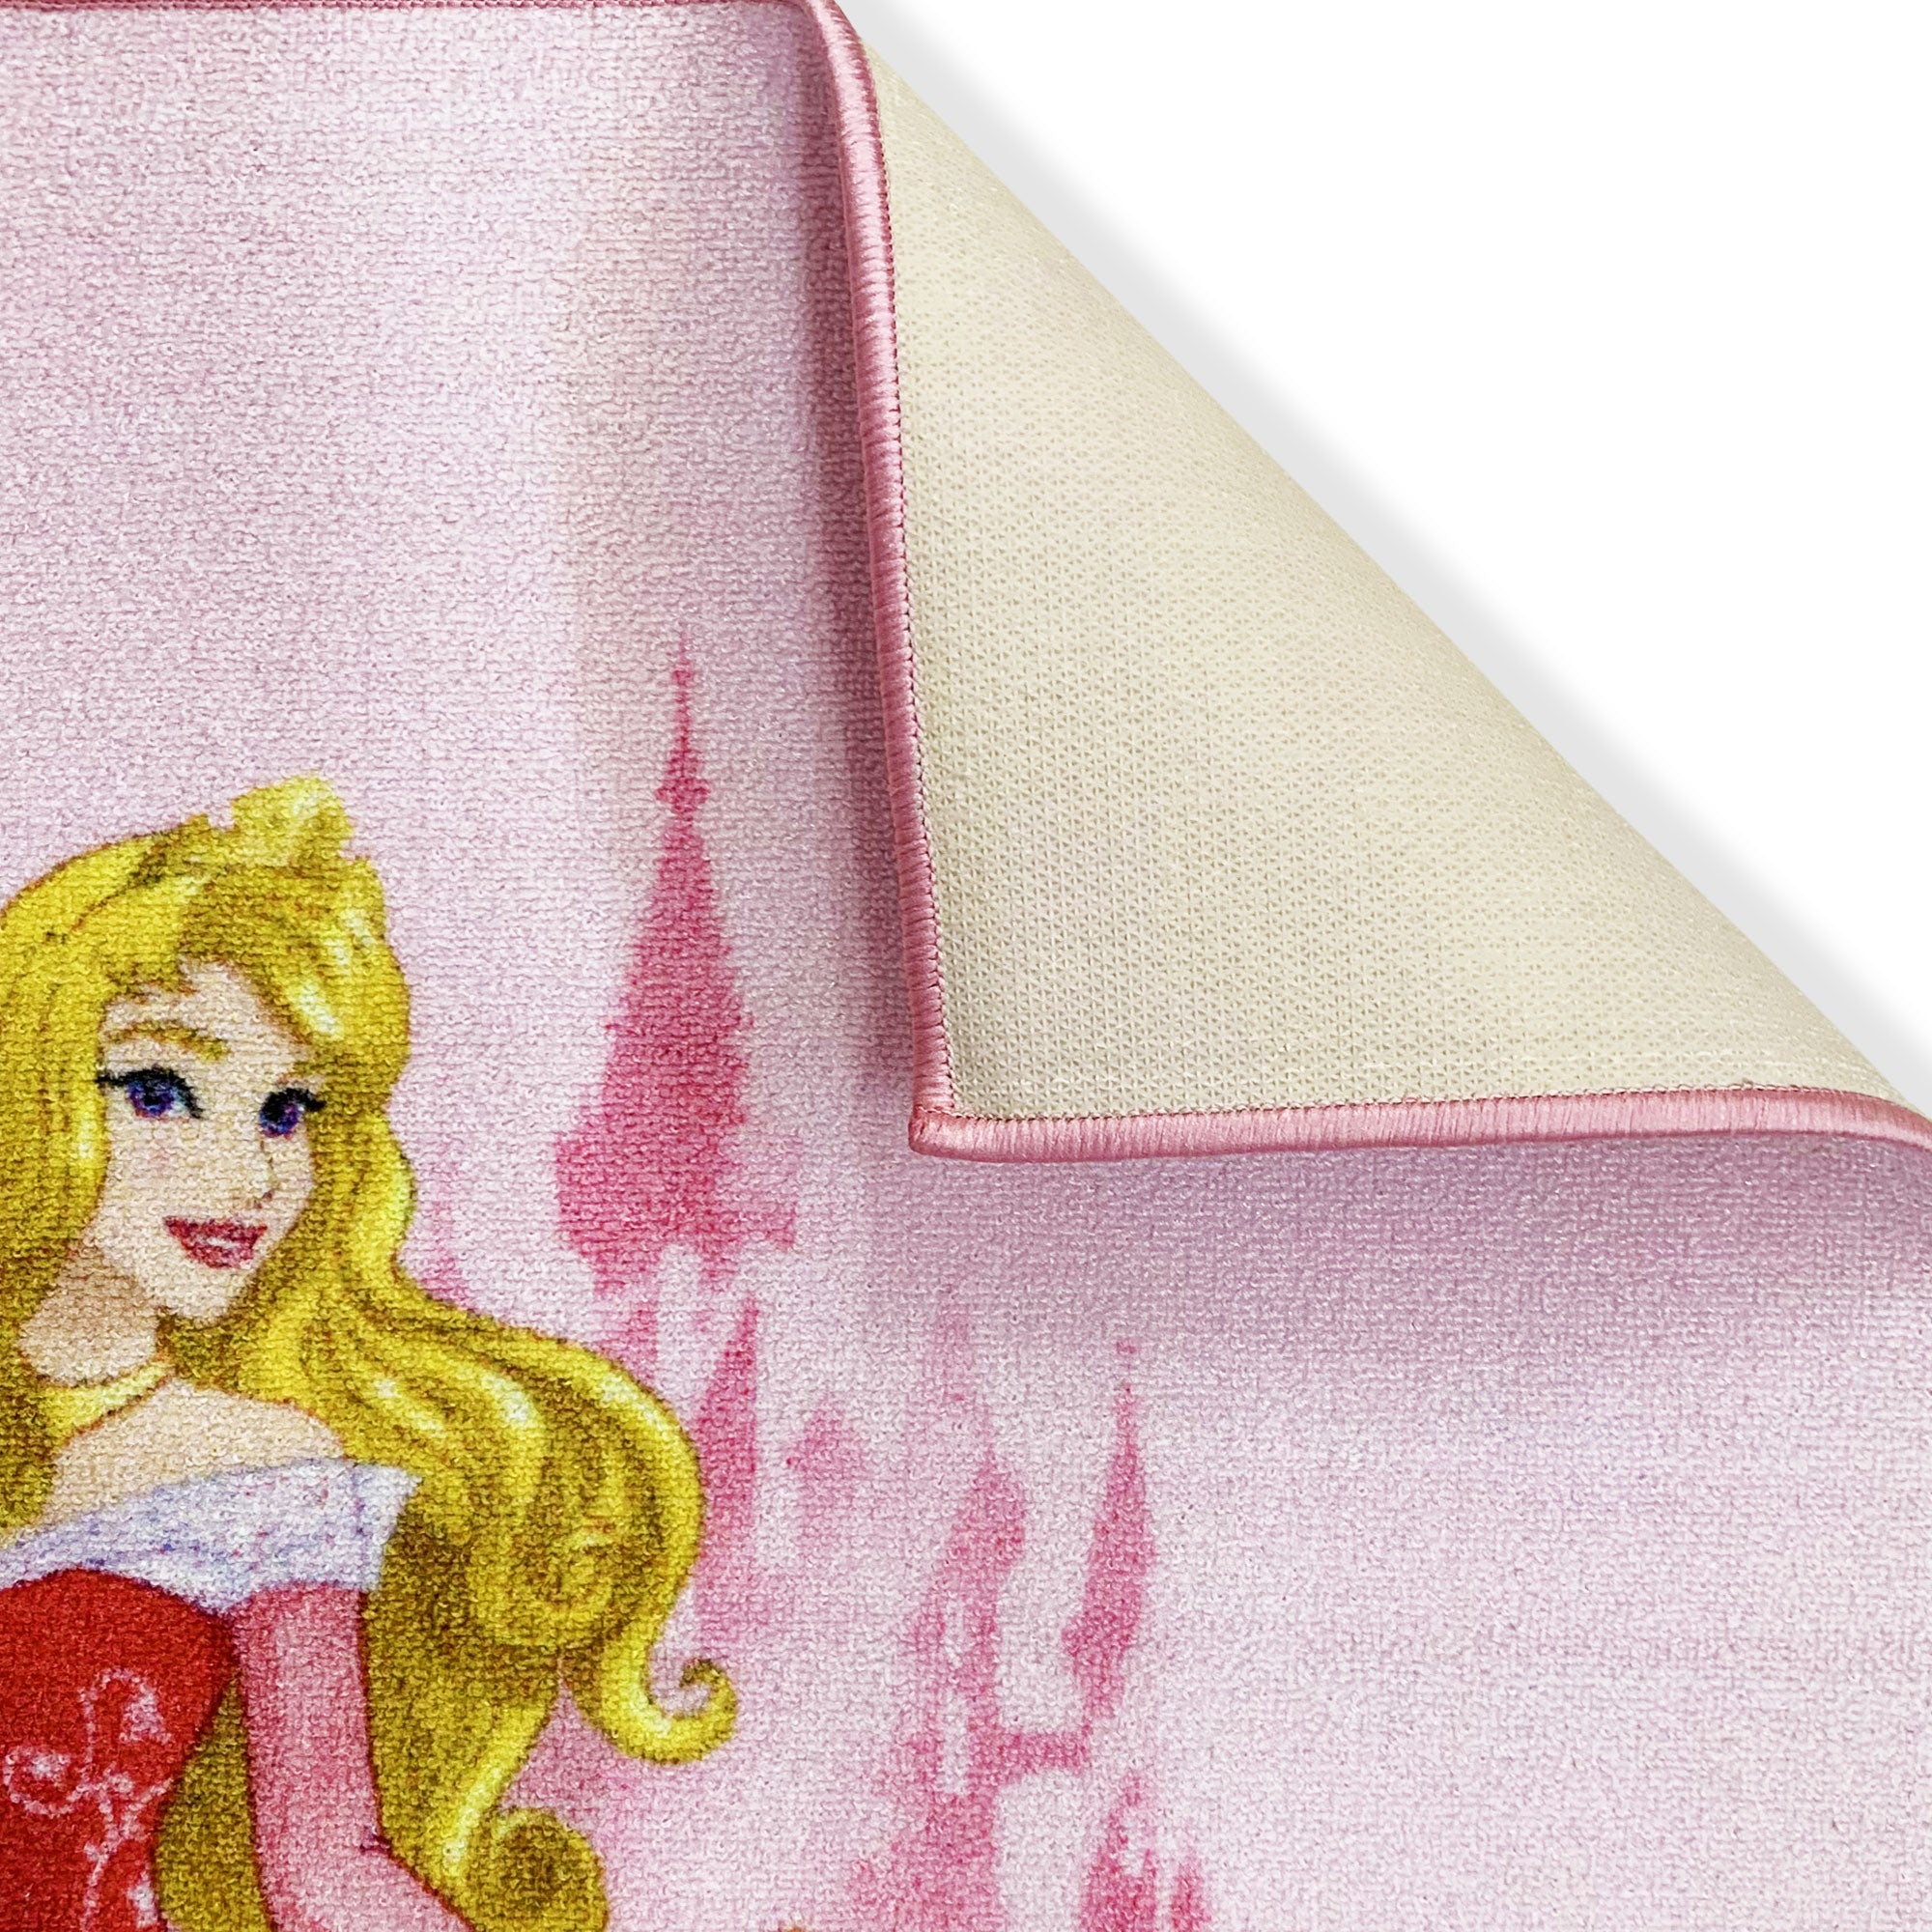 Tappeto antiscivolo Disney Princess Aurora la bella addormentata 80x120cm 6387